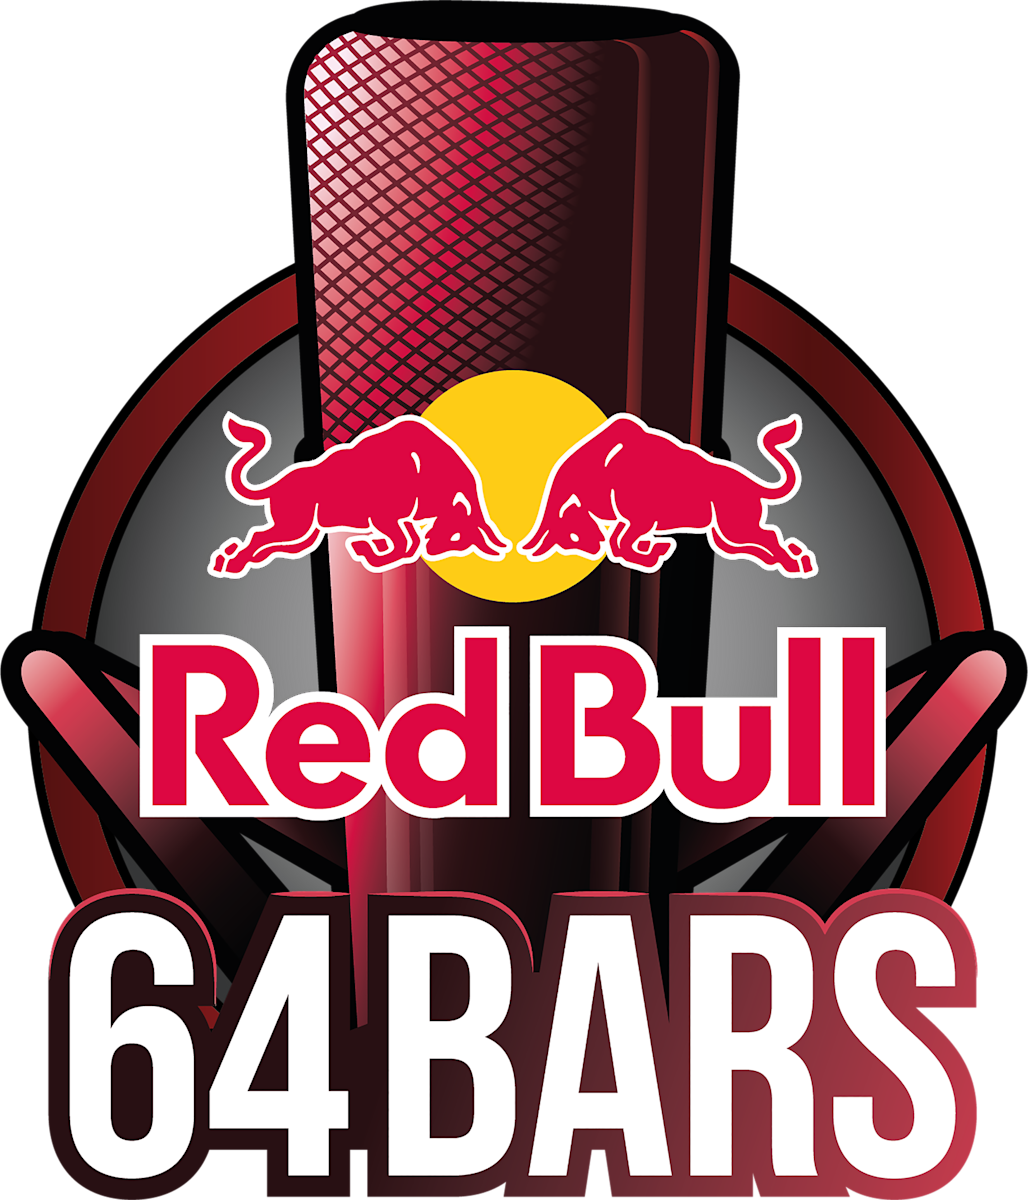 Red Bull 64 Bars